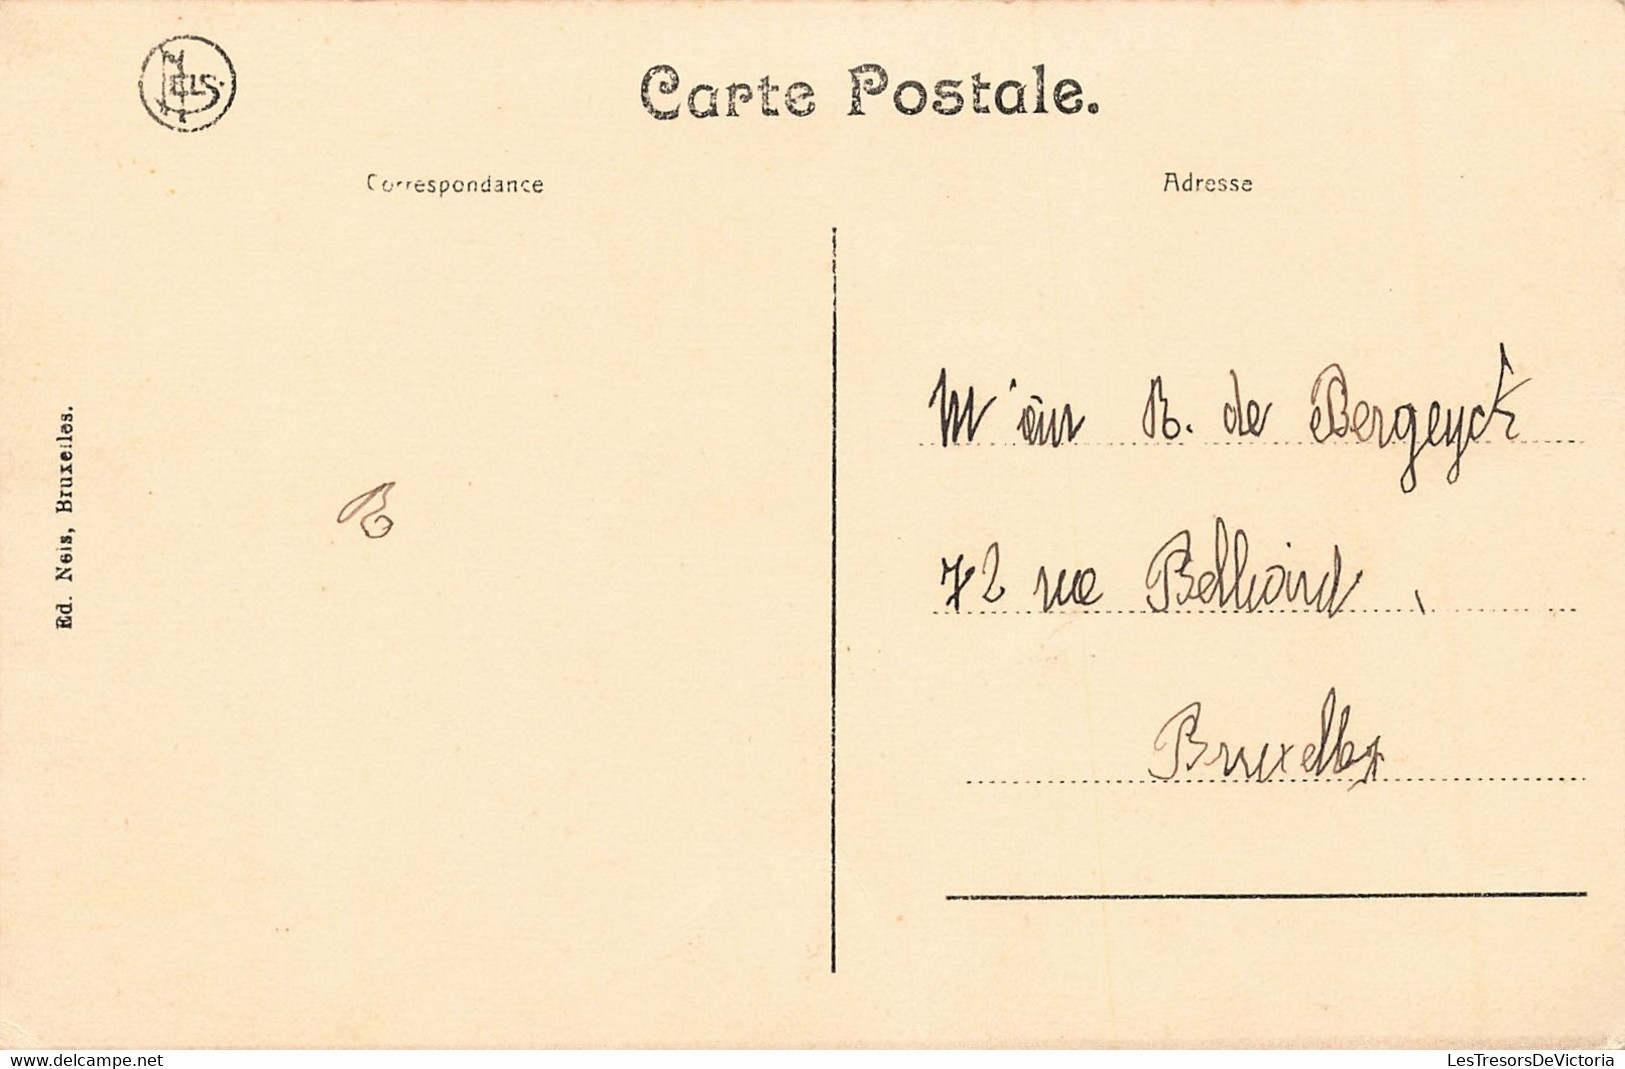 Belgique - Burdinne - Maison Du Maire - Edit.Nels - Animé - Carte Postale Ancienne - Burdinne